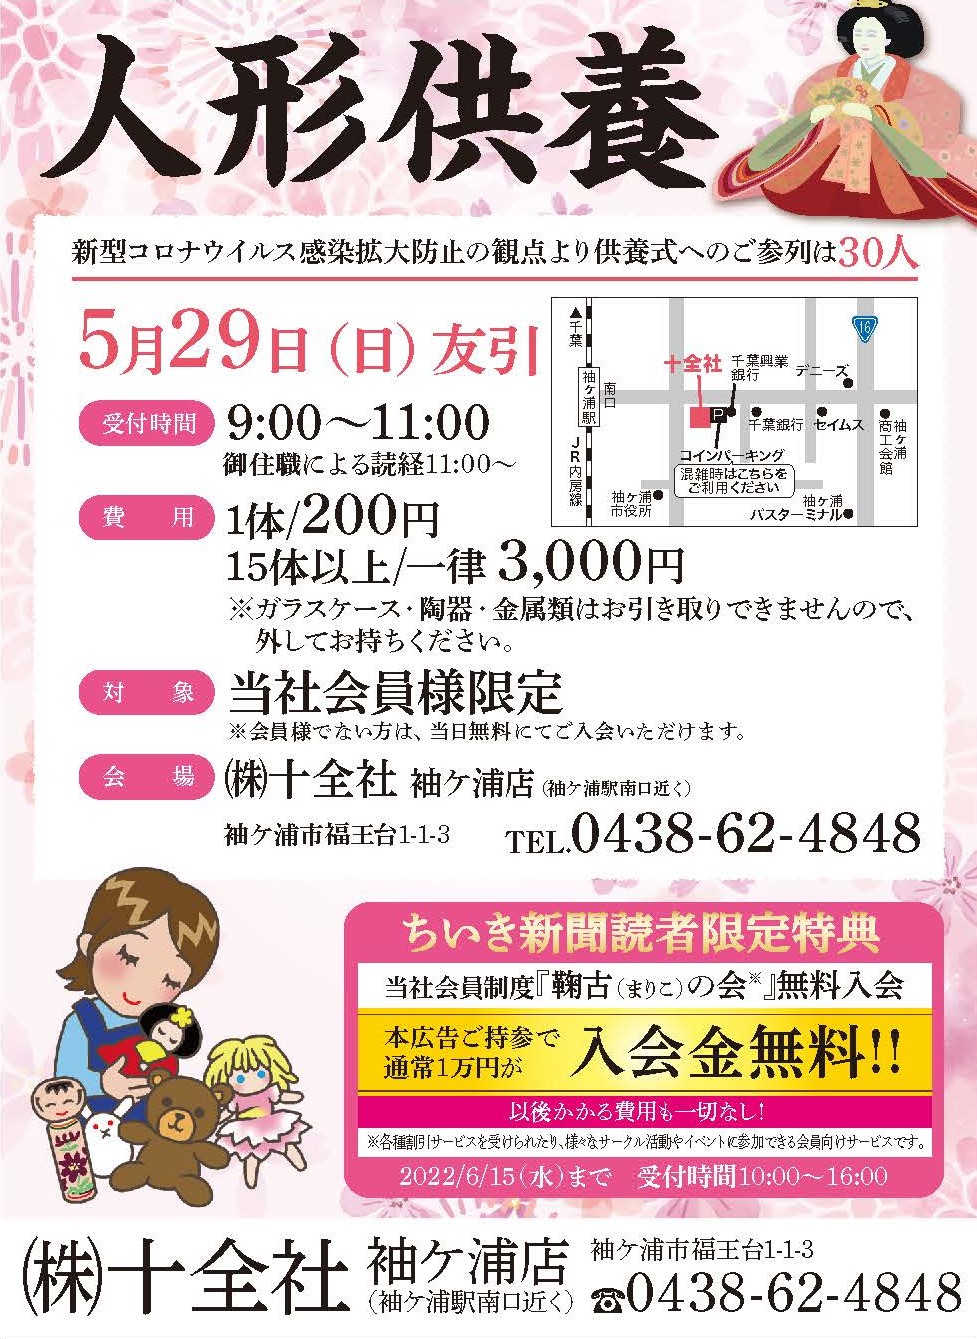 5月29日（日）袖ケ浦店 【人形供養式】 開催のお知らせ